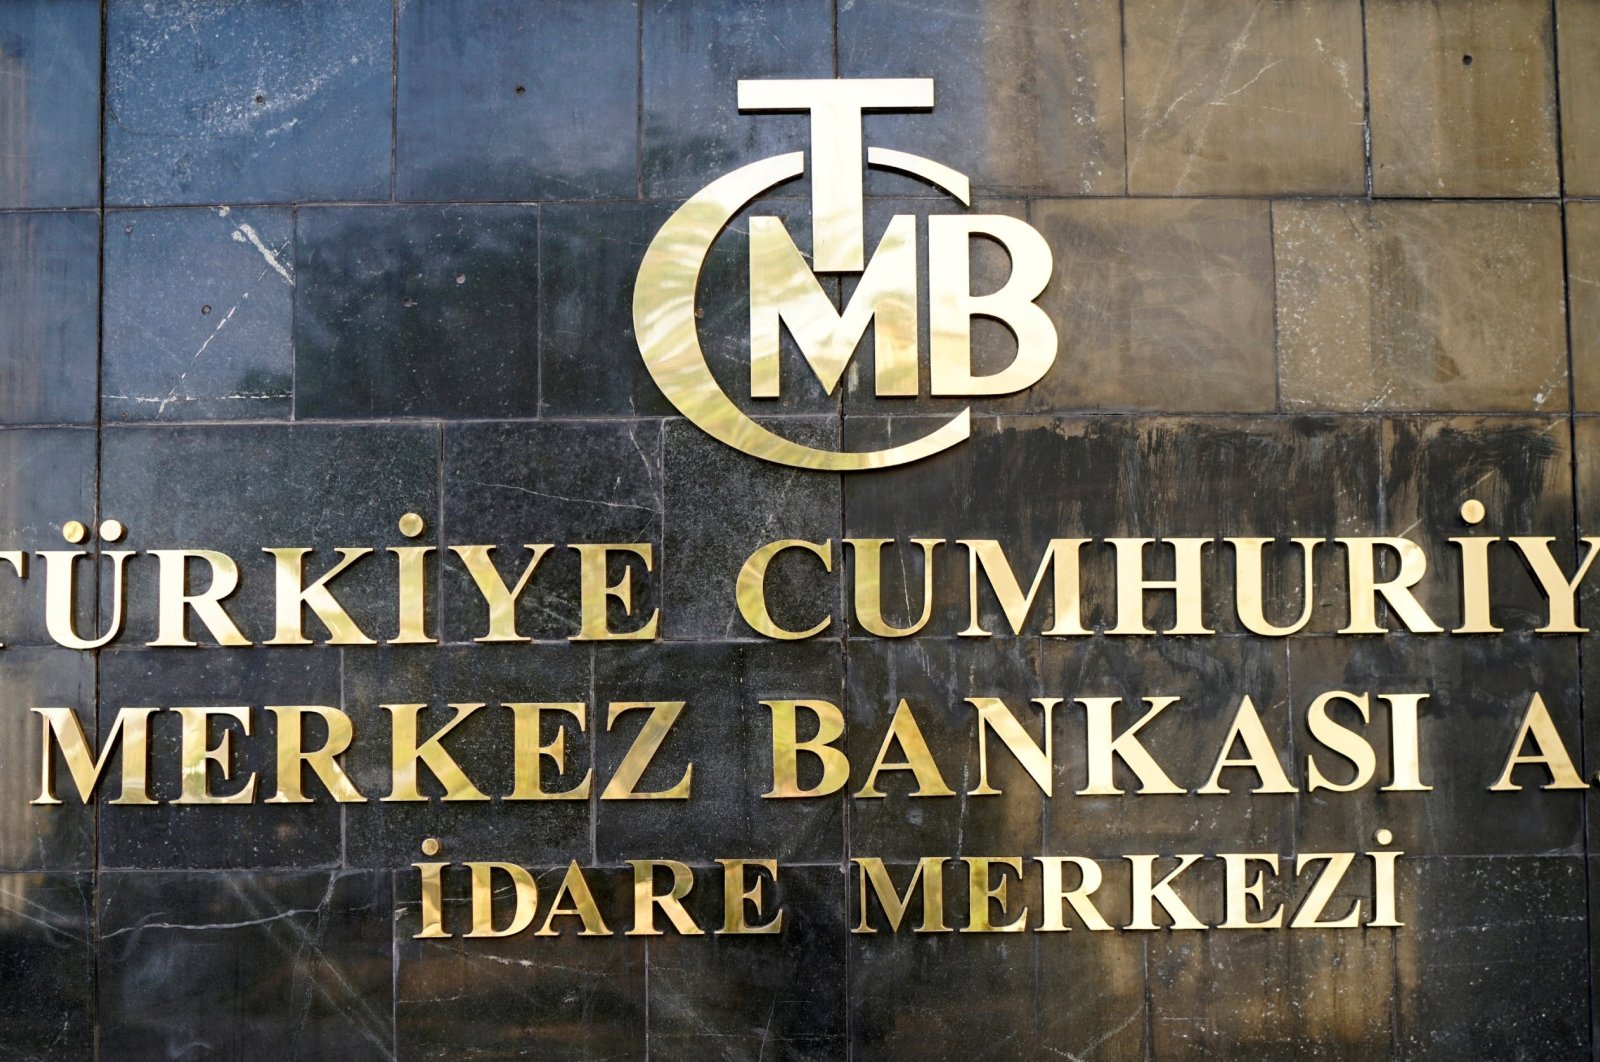 Bank sentral Turki mempertahankan suku bunga stabil selama 6 bulan berturut-turut